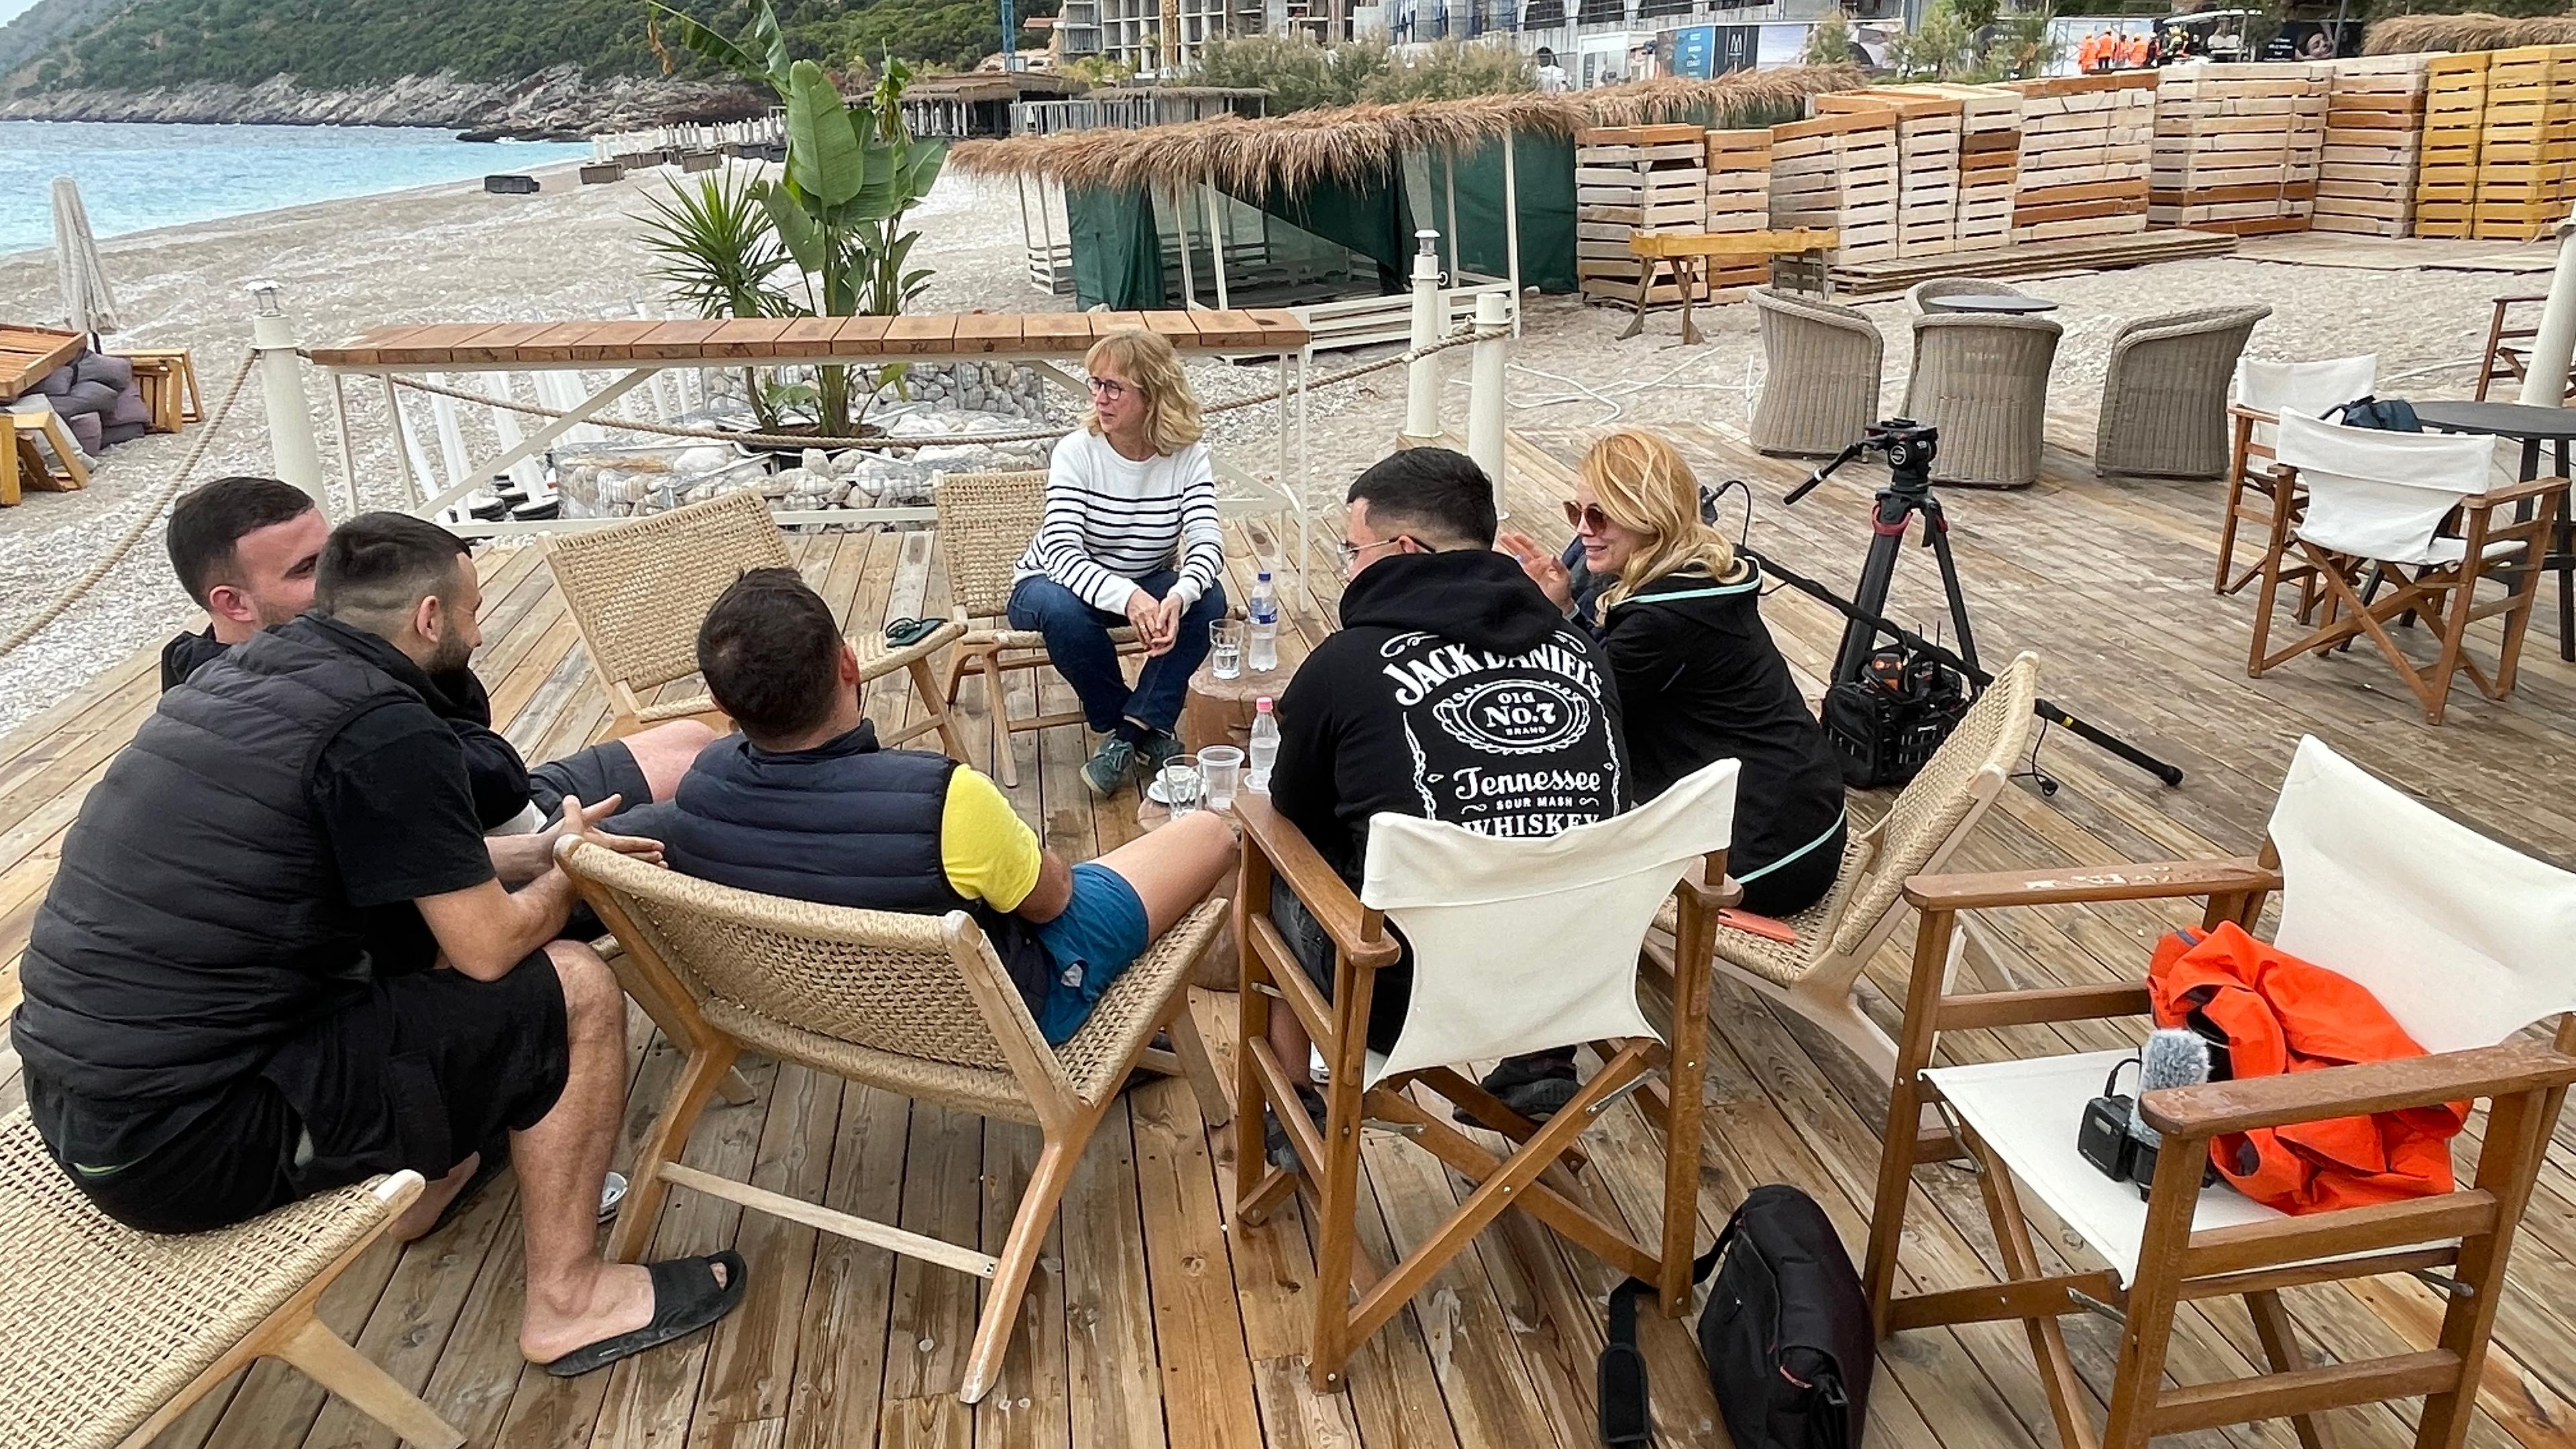 Vier junge Männer und eine Frau sitzen auf Klappstühlen im Halbkreis. Sie sprechen mit einer blonden Frau. Die Gruppe sitzt auf einer großen Terasse am Strand. Im Hintergrund ist die grüne Küste und das Meer zu sehen